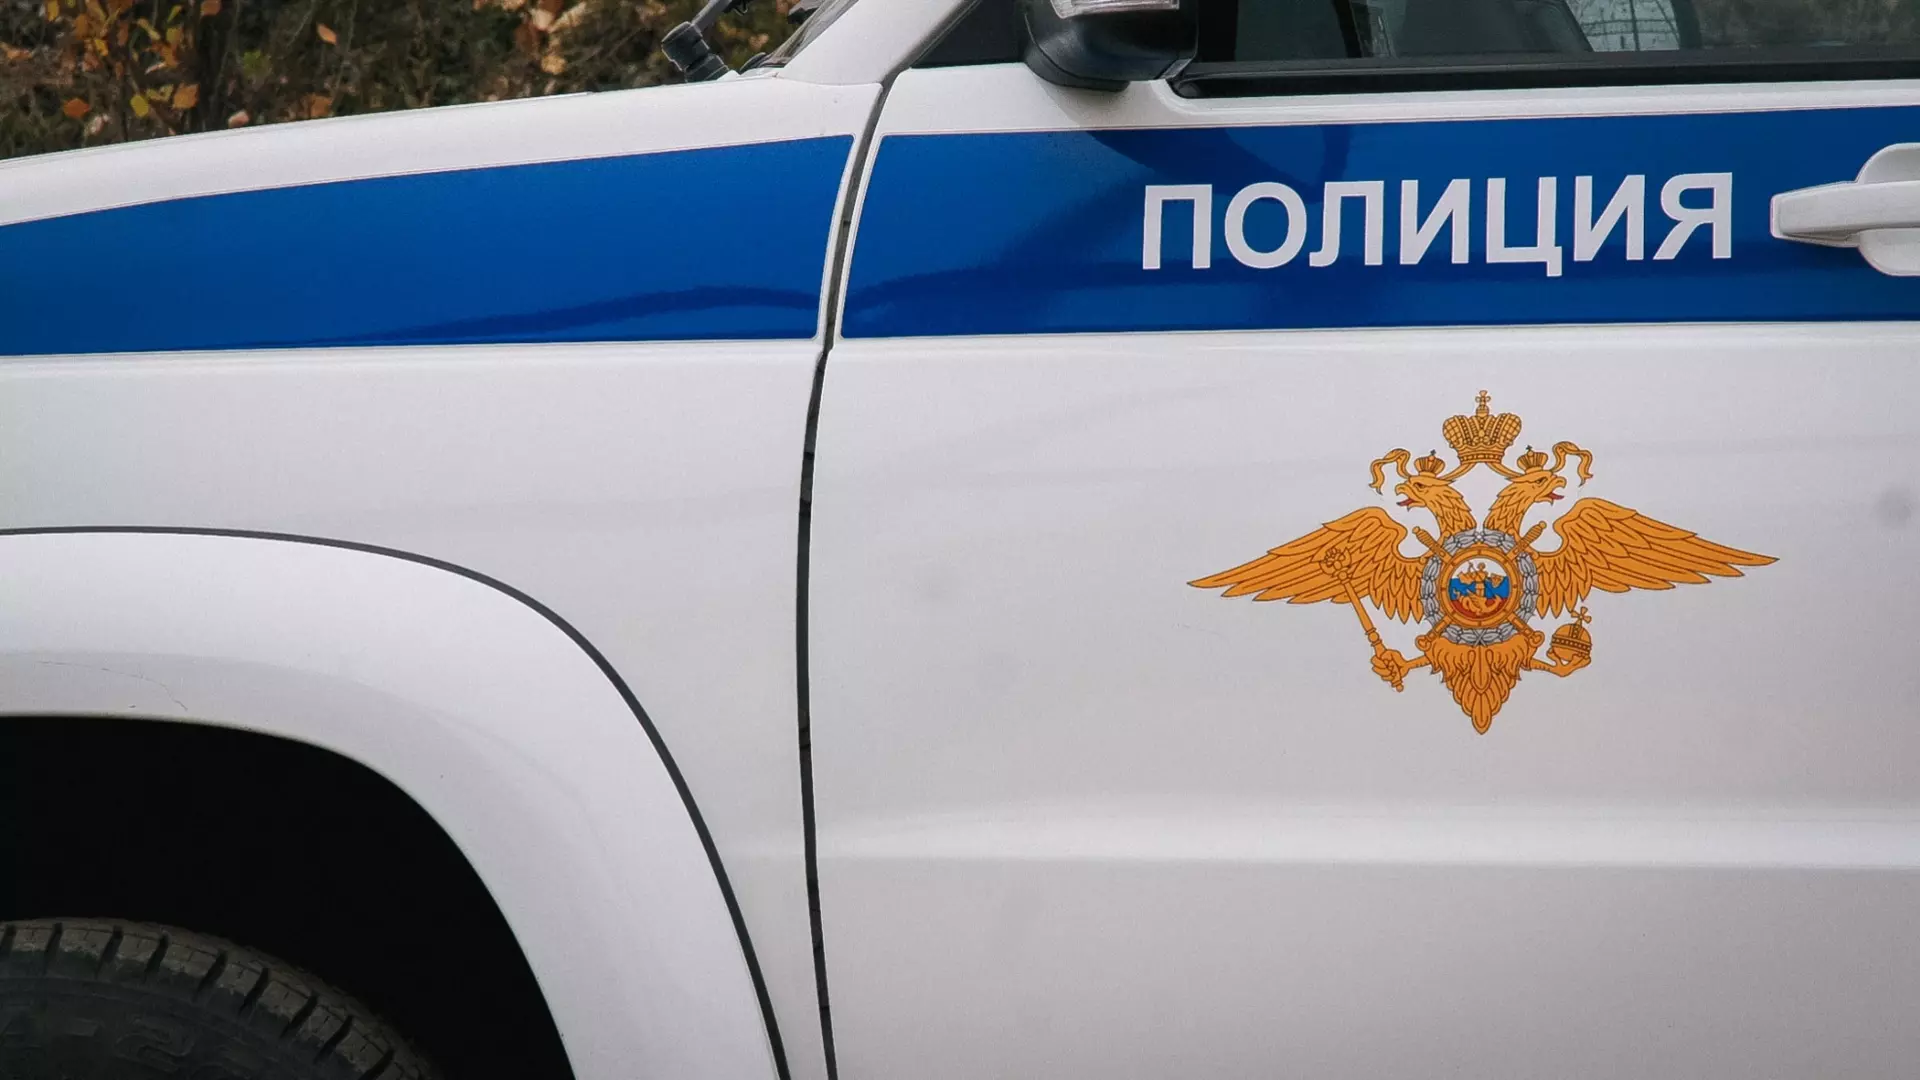 Неизвестные обстреляли окно интерьерного магазина в Екатеринбурге